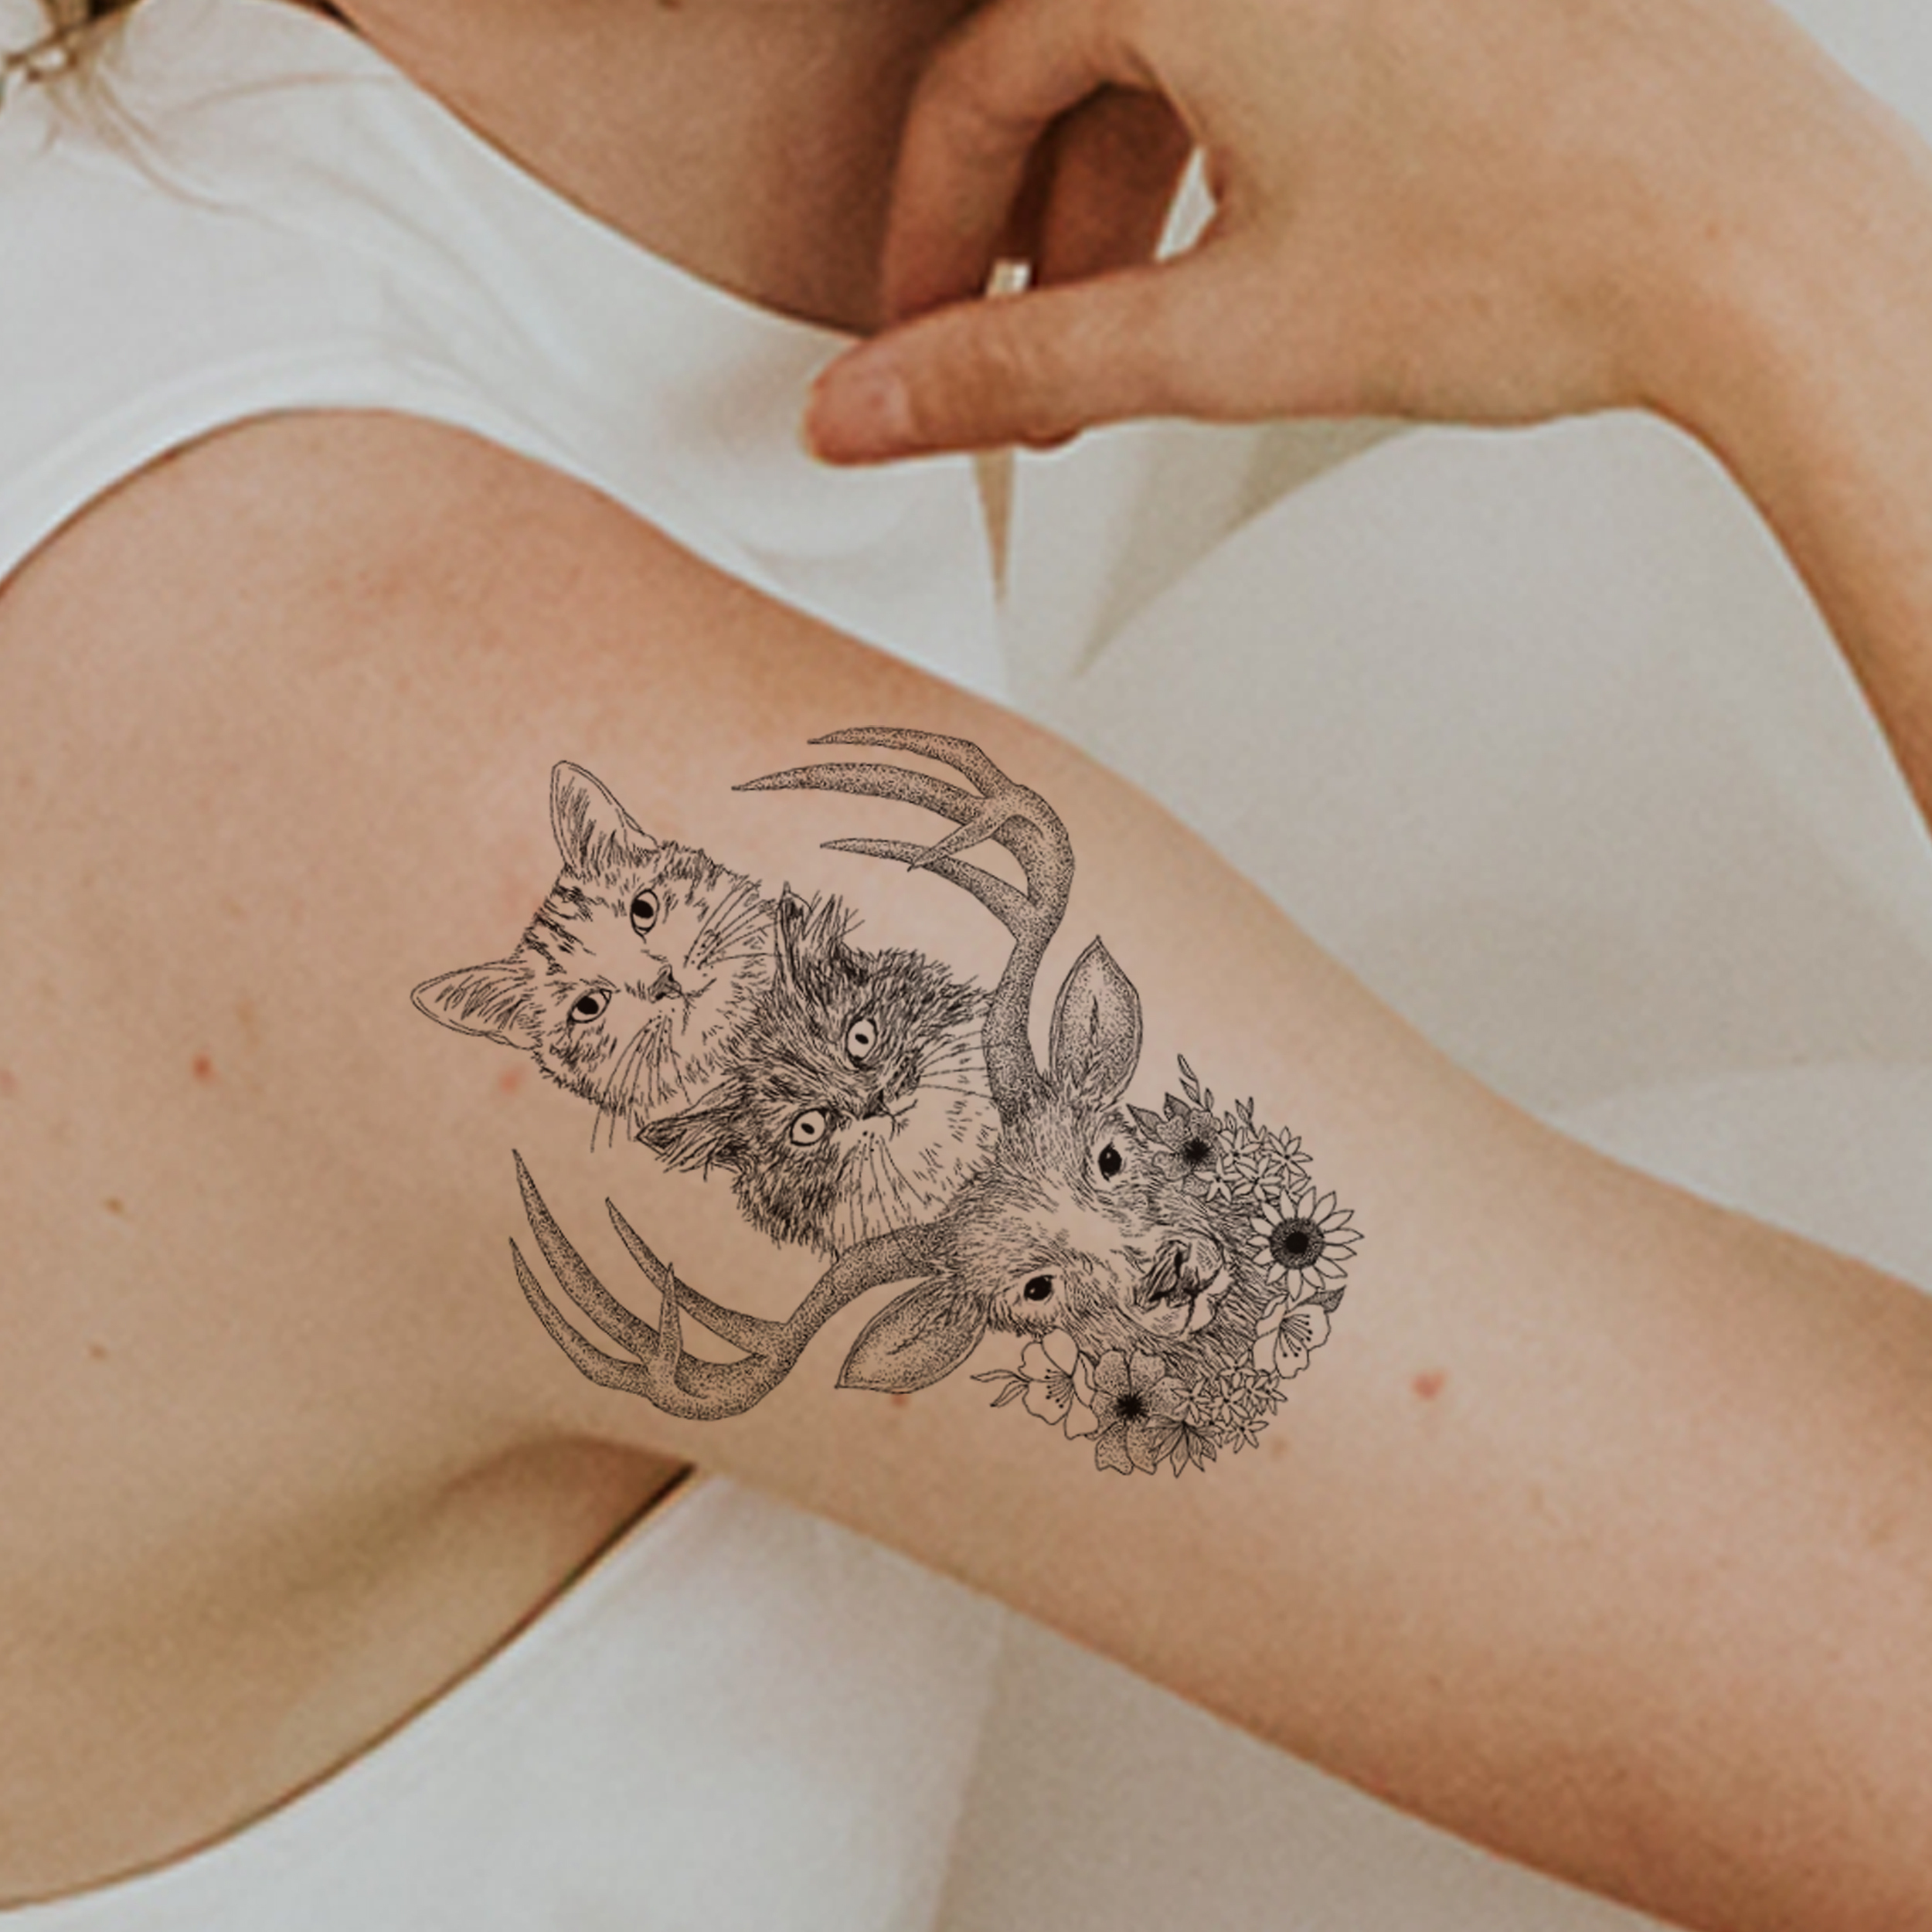 タトゥーシール 猫の絵 イラスト猫雑貨 Dear Cats Cat Tattoo 猫雑貨 グッズ通販 猫や動物イラスト 似顔絵作成 365cat Art